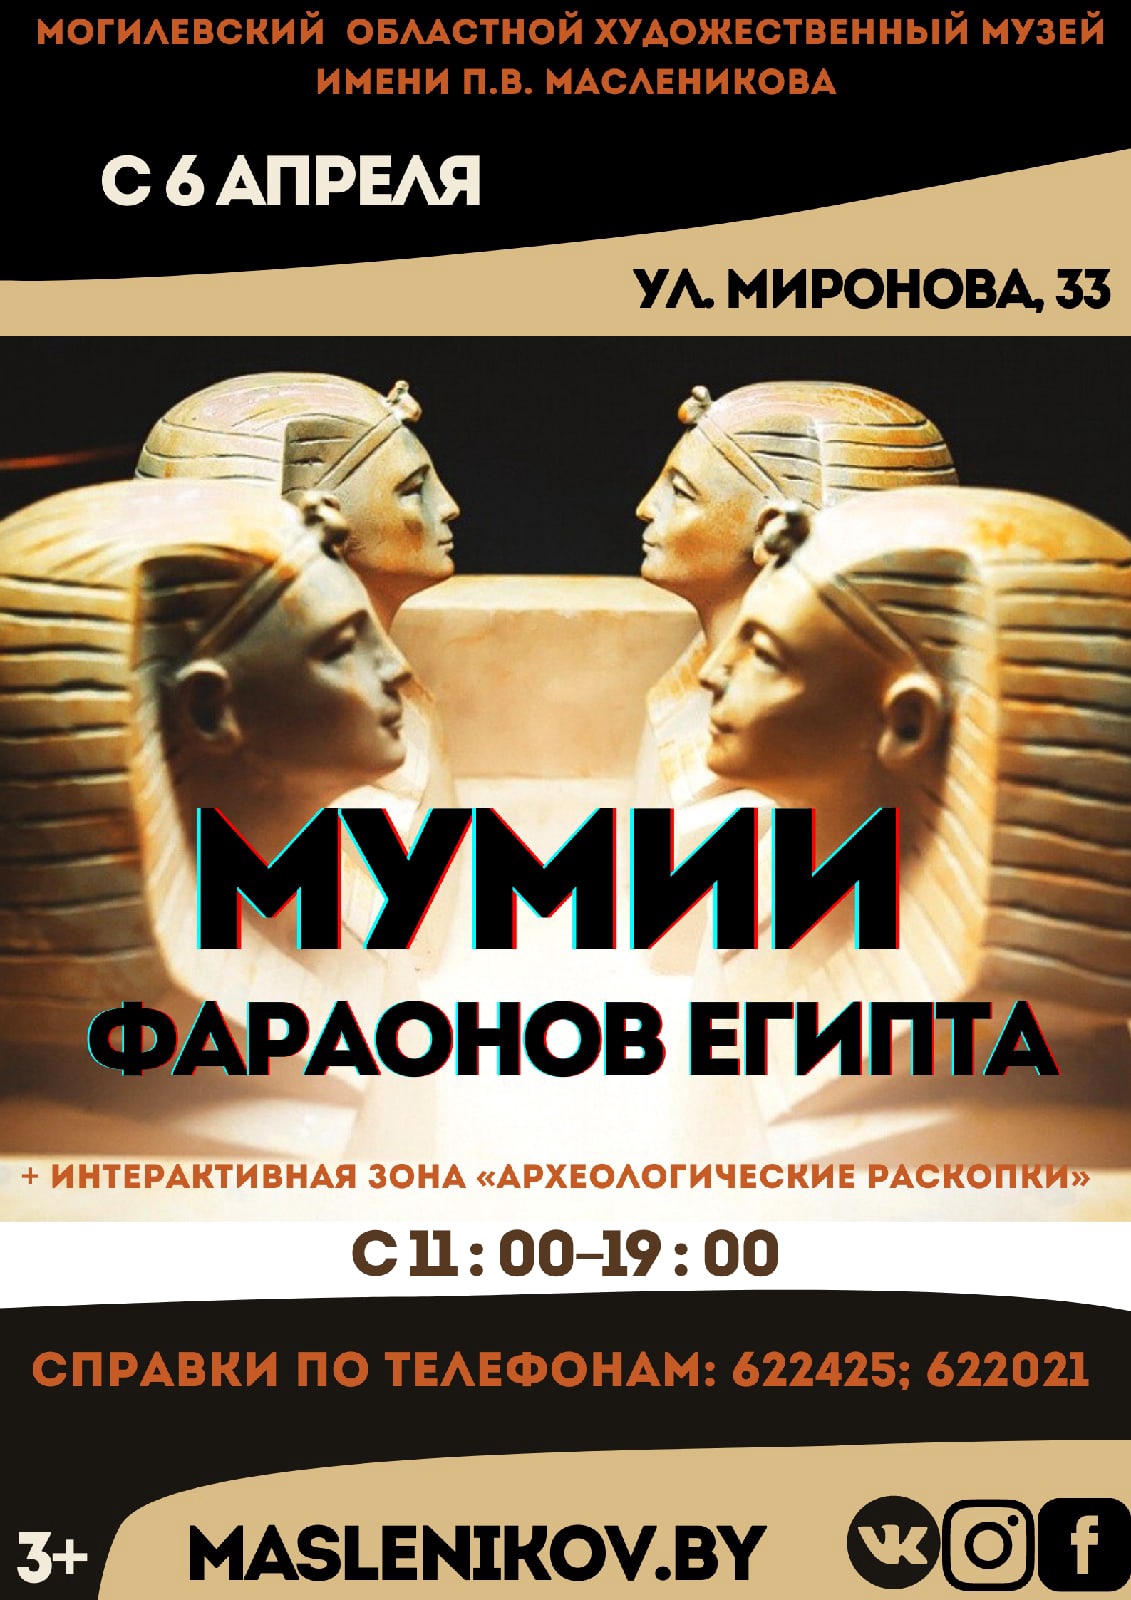 Выставка «Мумии фараонов Египта» начинает работу в Могилеве